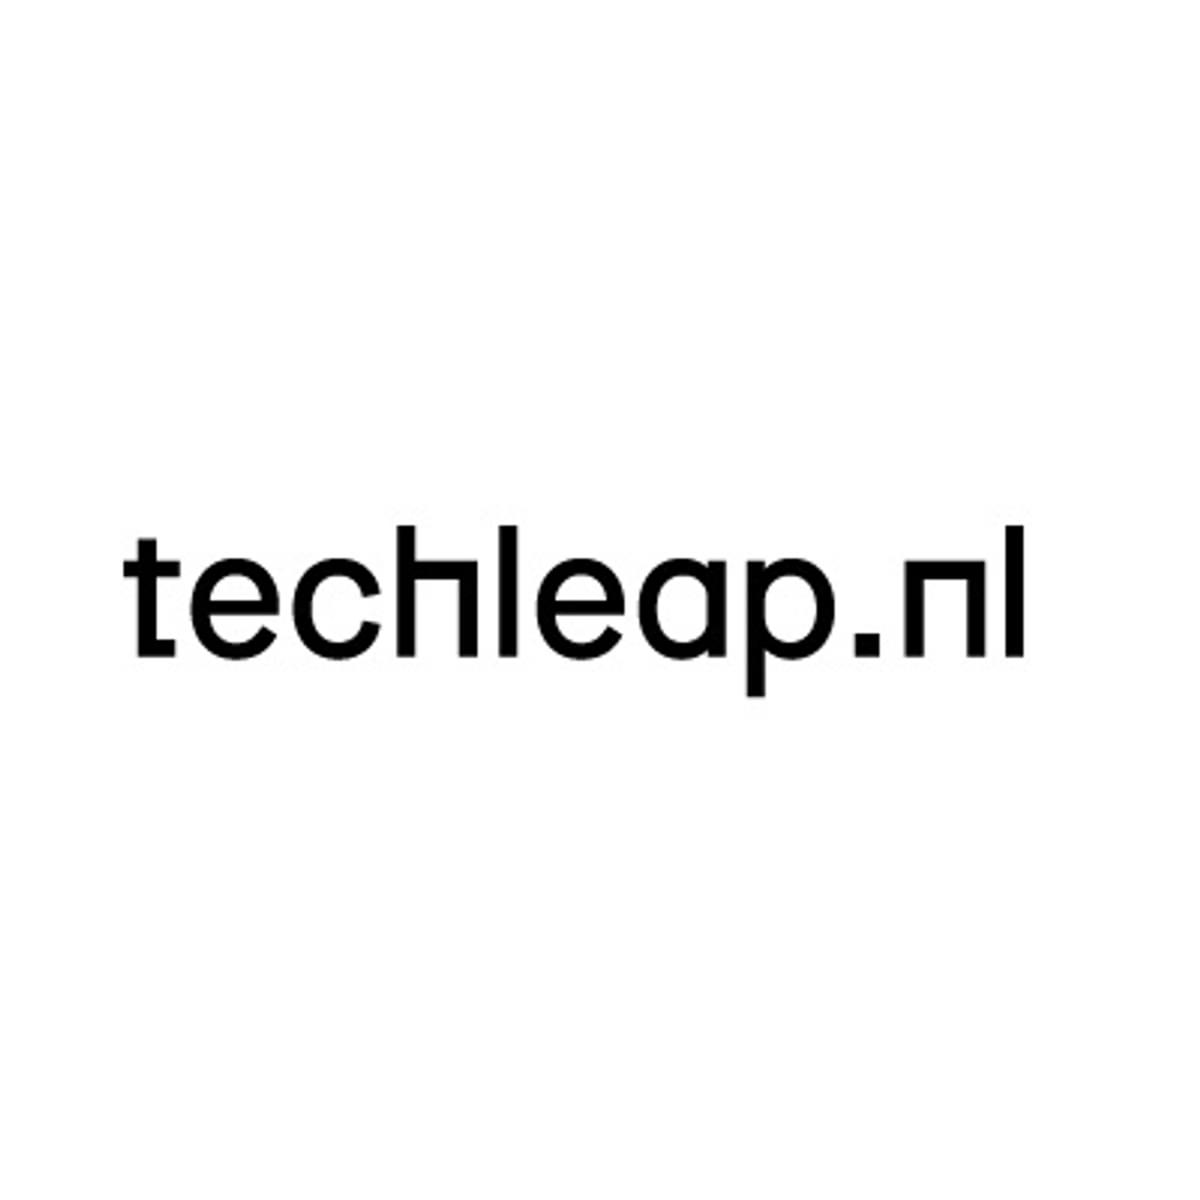 Techleap.nl verwelkomt tien scale-ups in haar Rise programma image